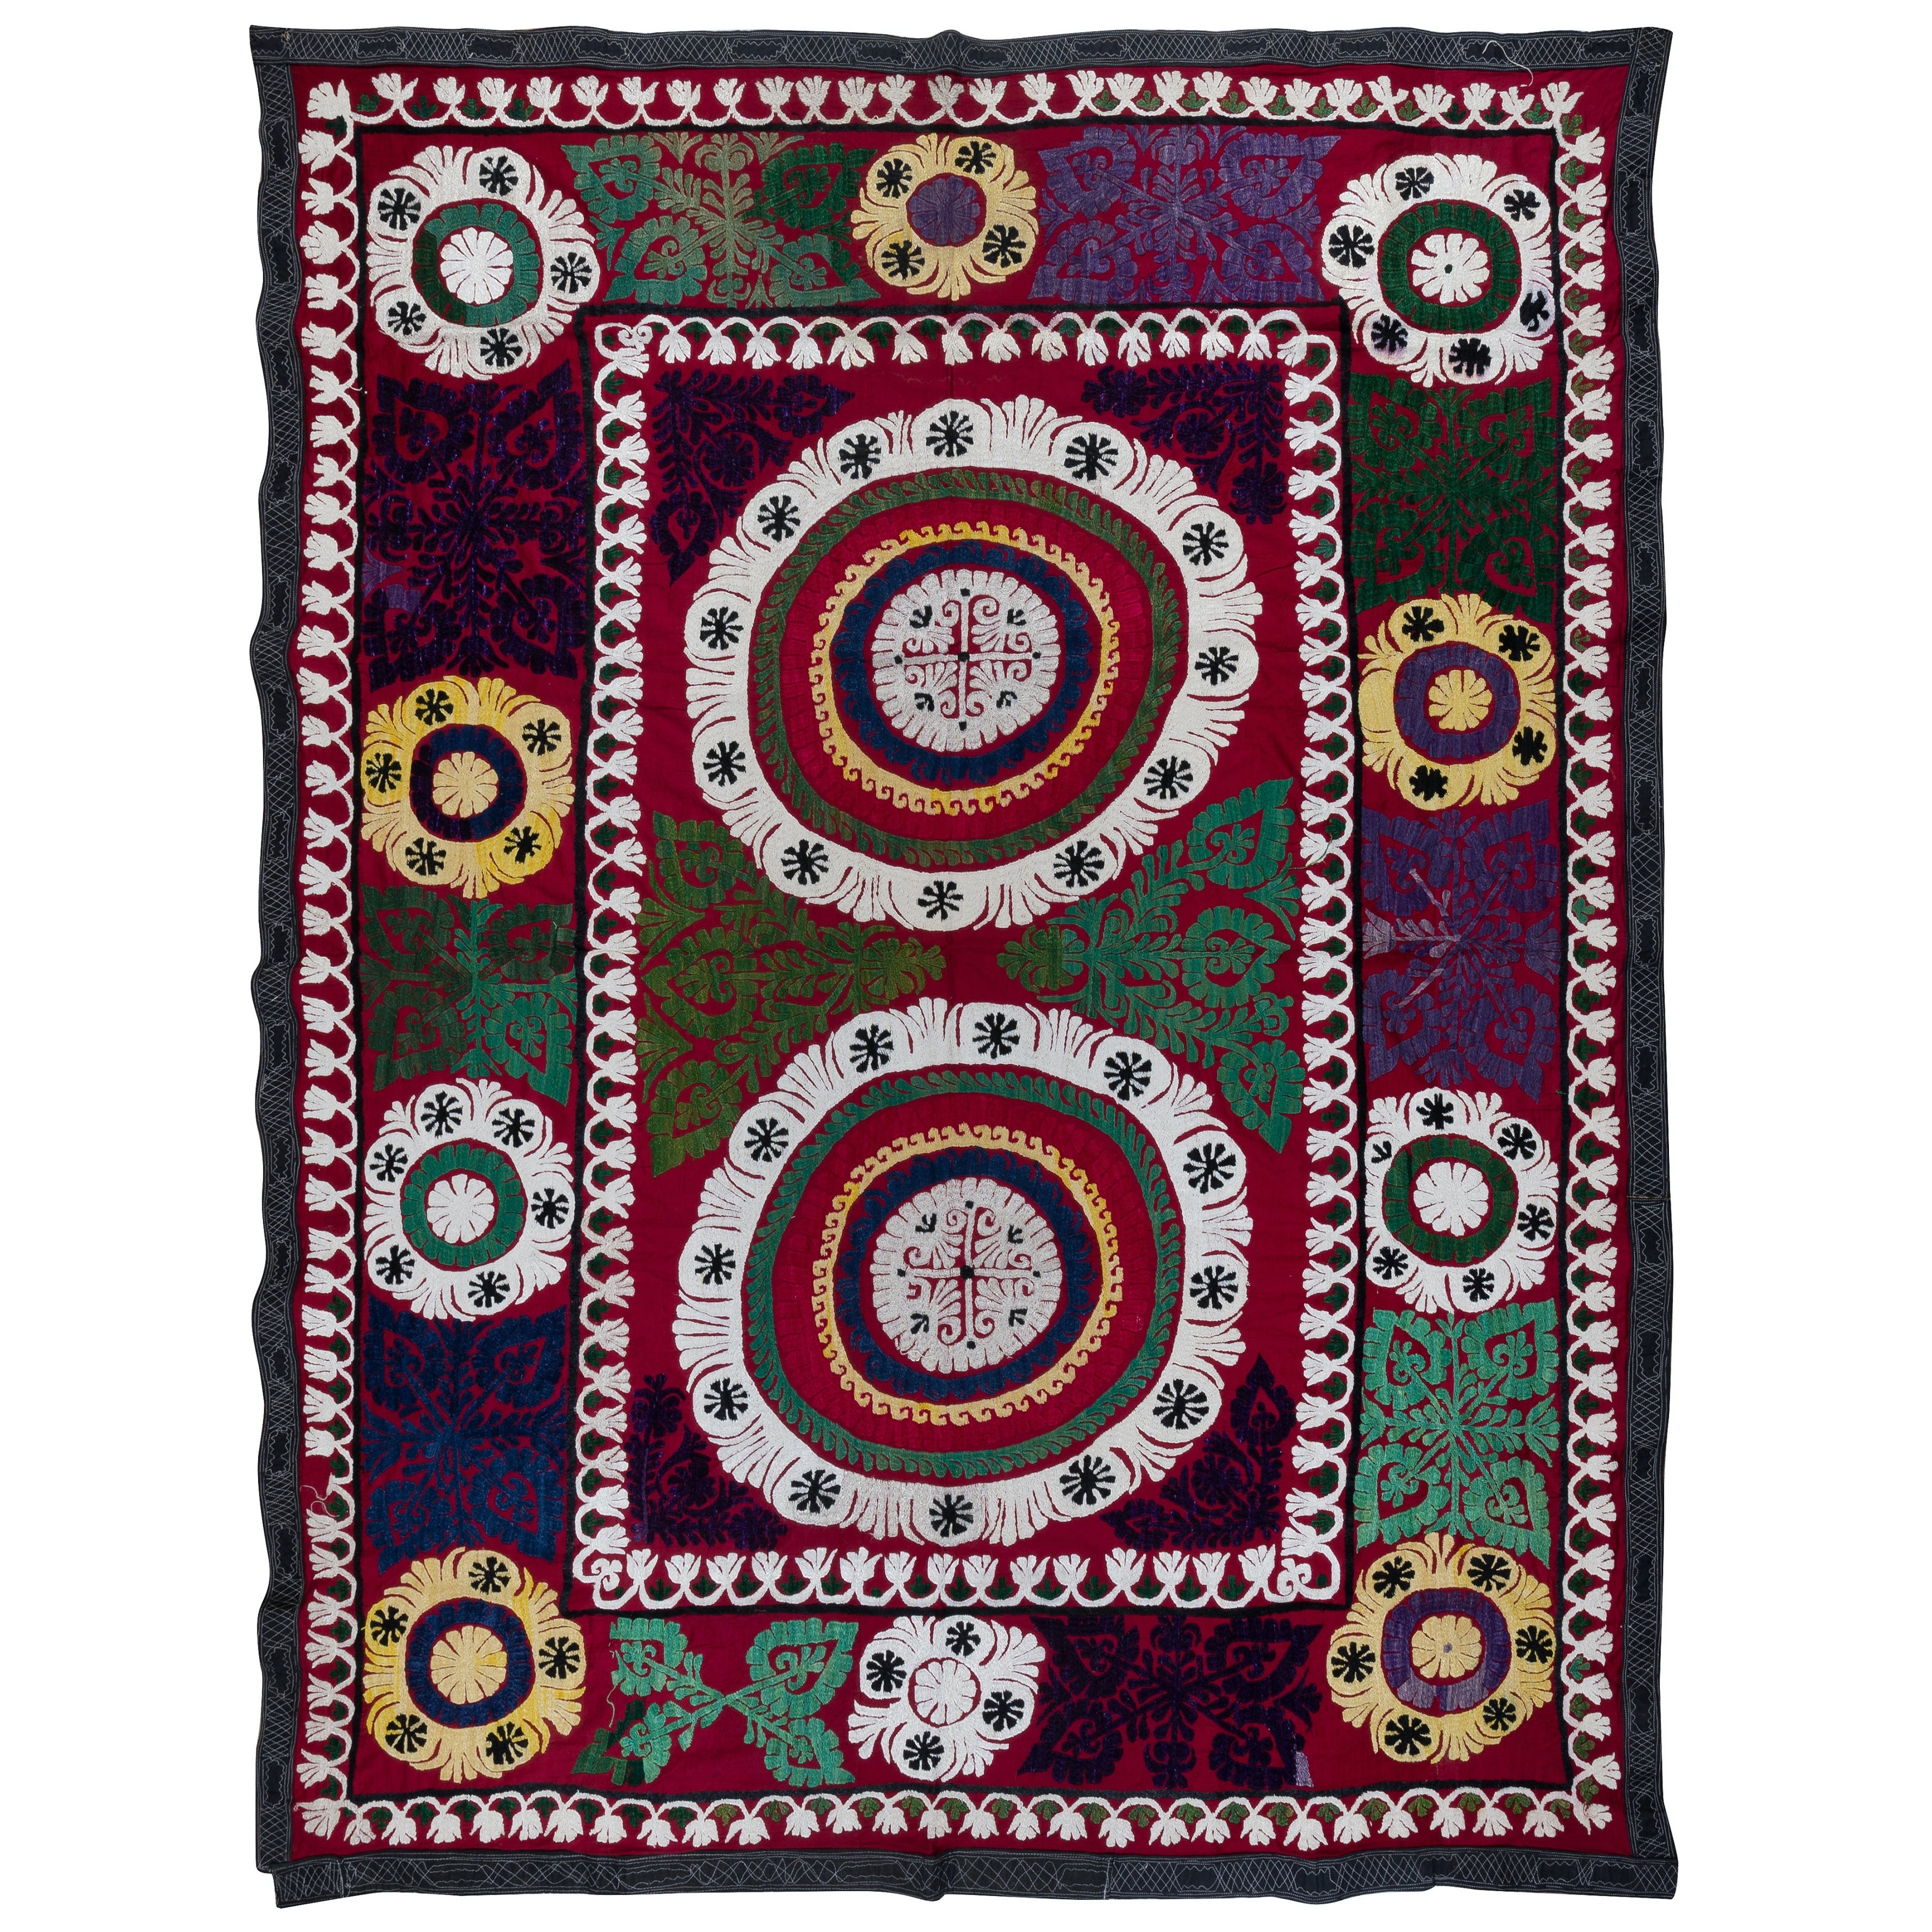 5.7x7.6 ft Vintage-Wandbehang aus Seide mit Stickerei, farbenfroher türkischer Suzani-Bettbezug